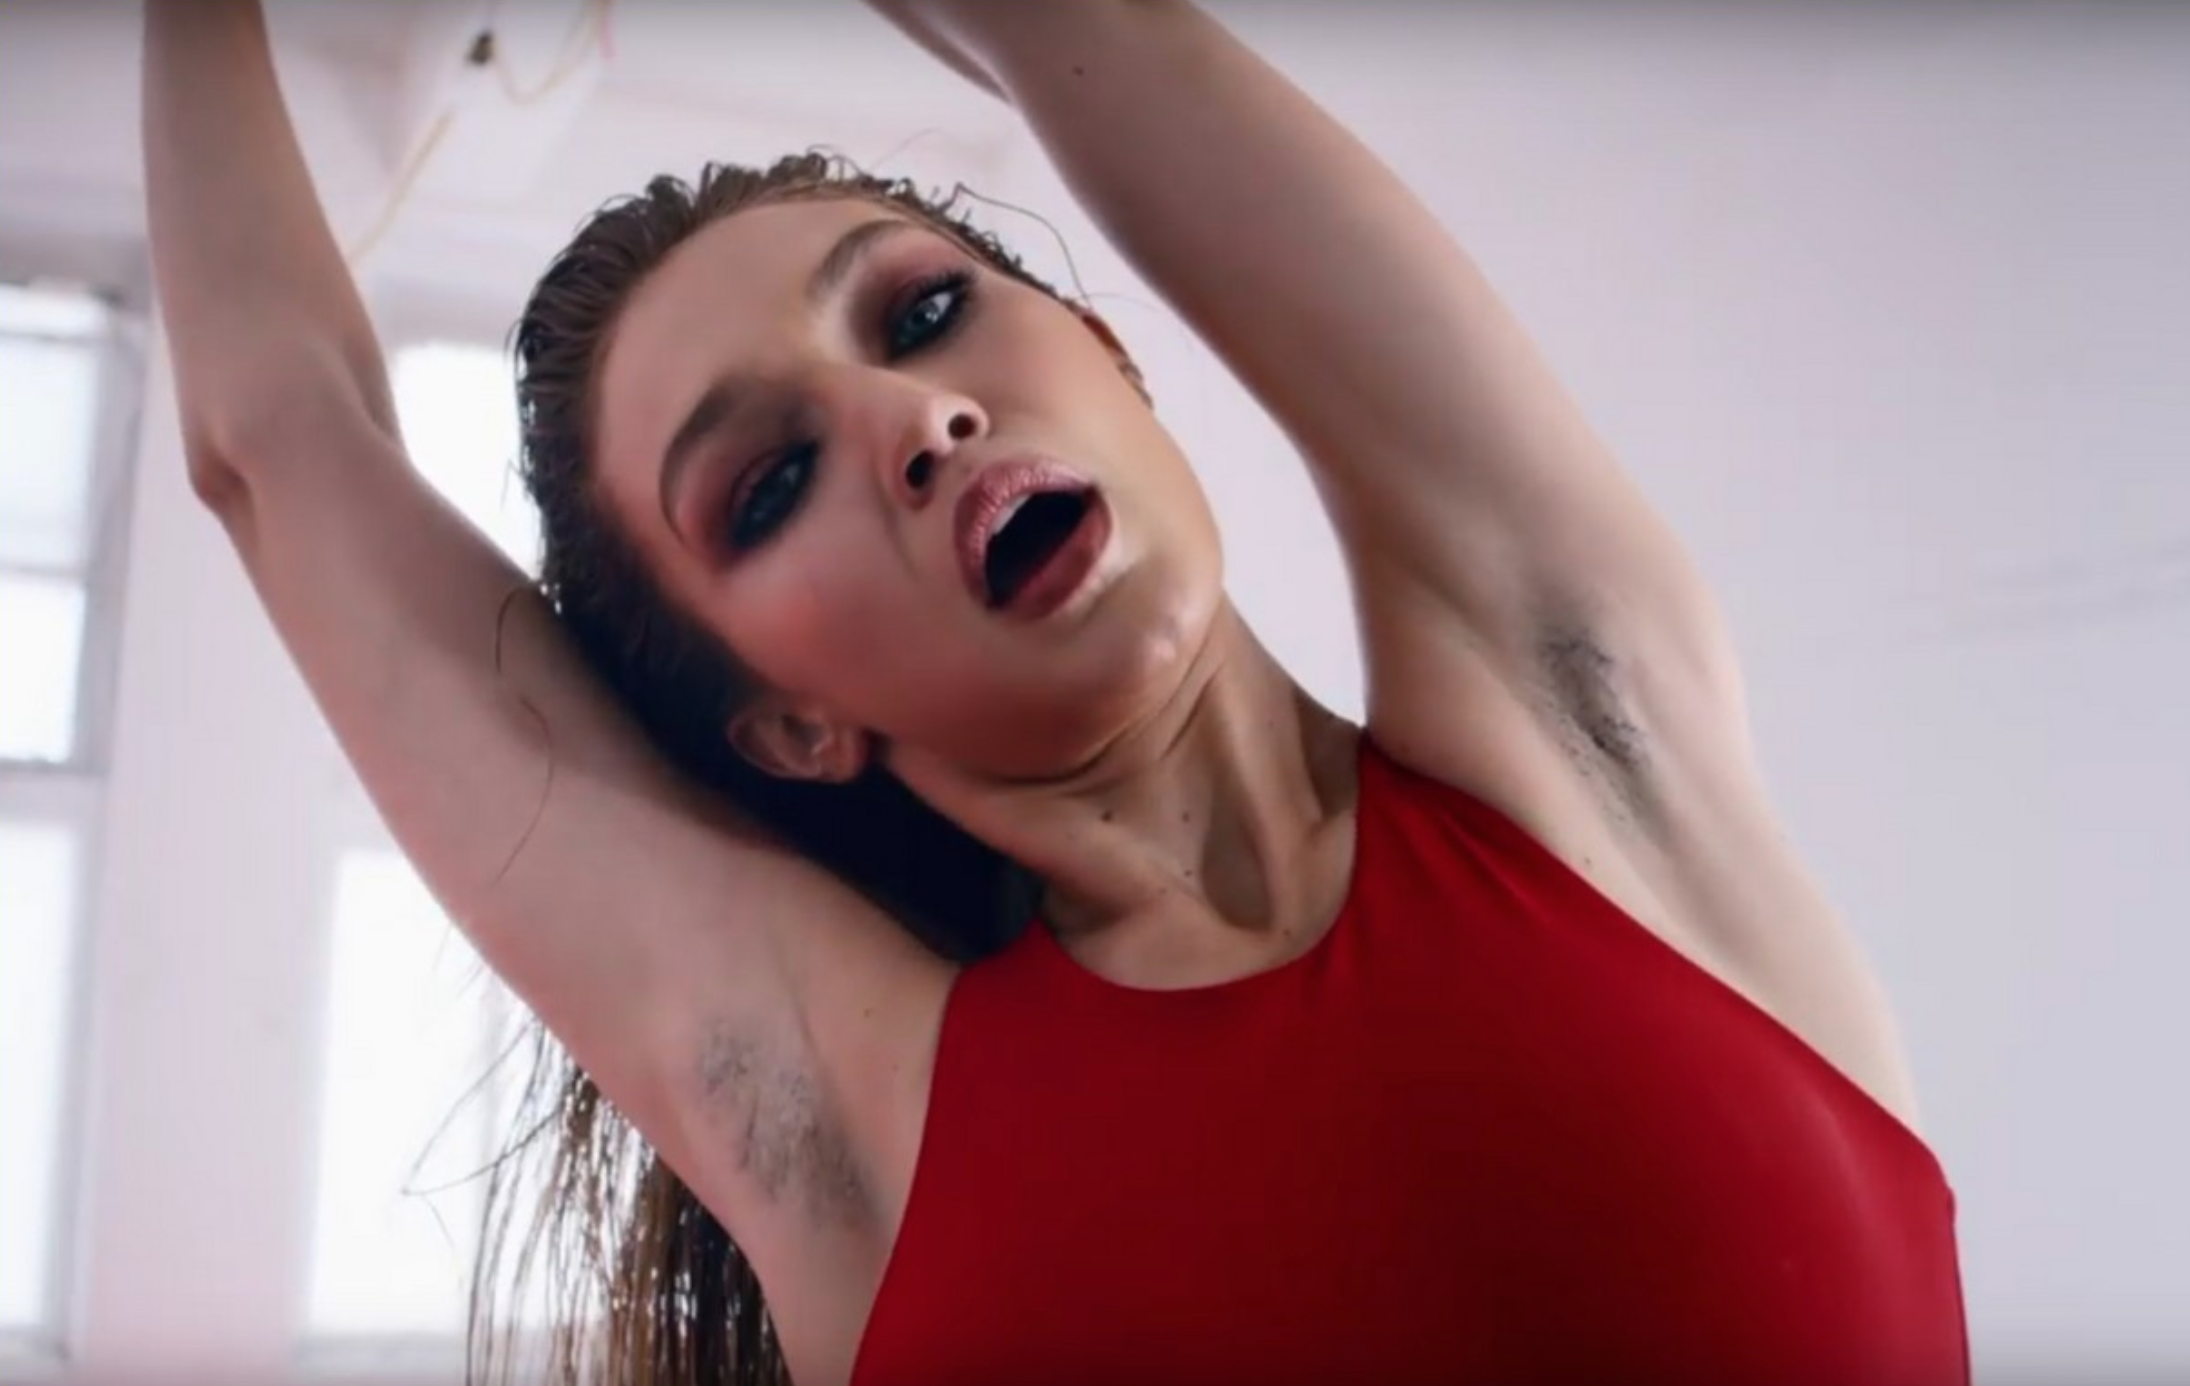 Sexy Armpit Pics